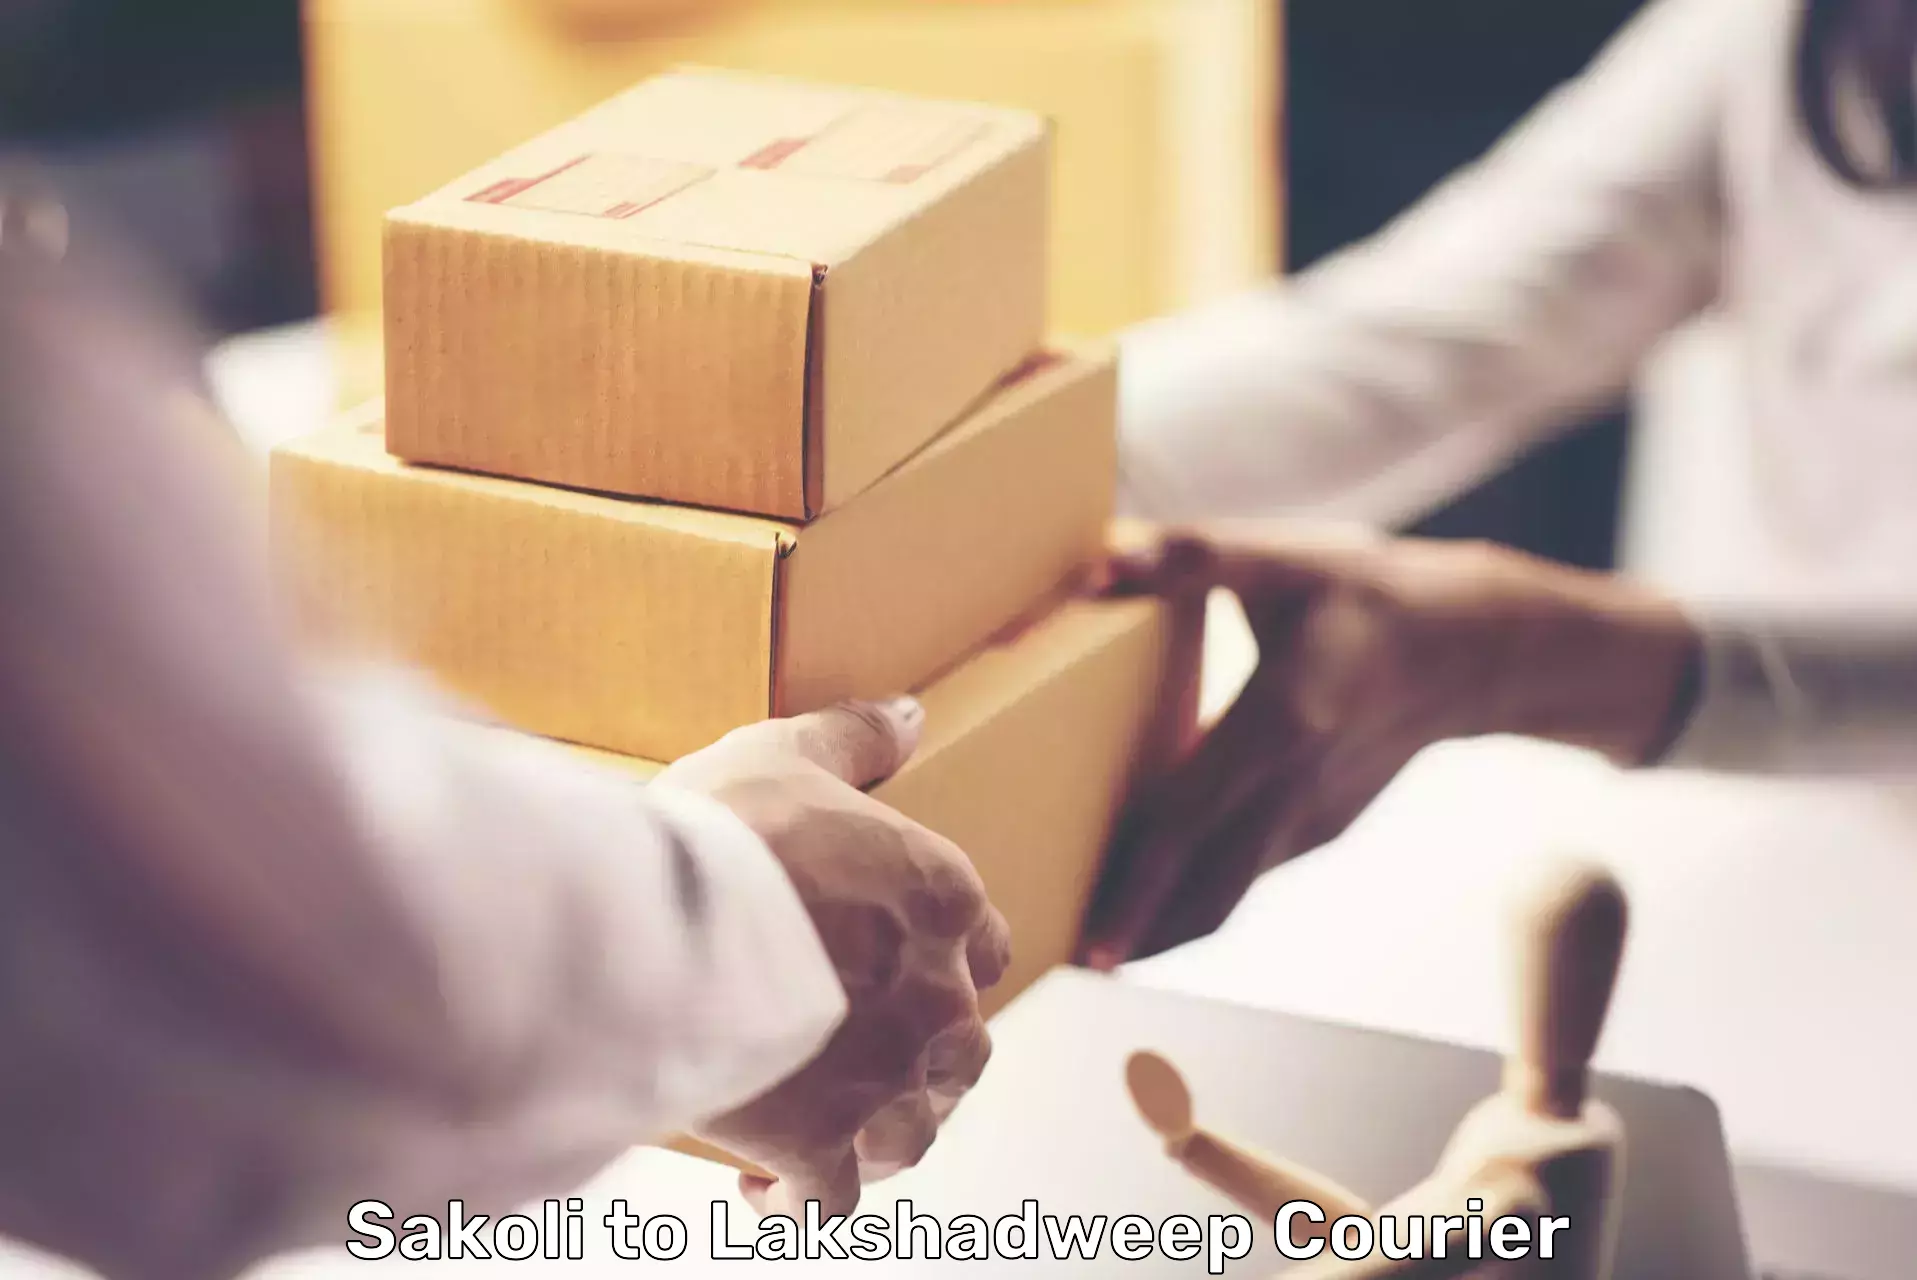 Courier service partnerships Sakoli to Lakshadweep